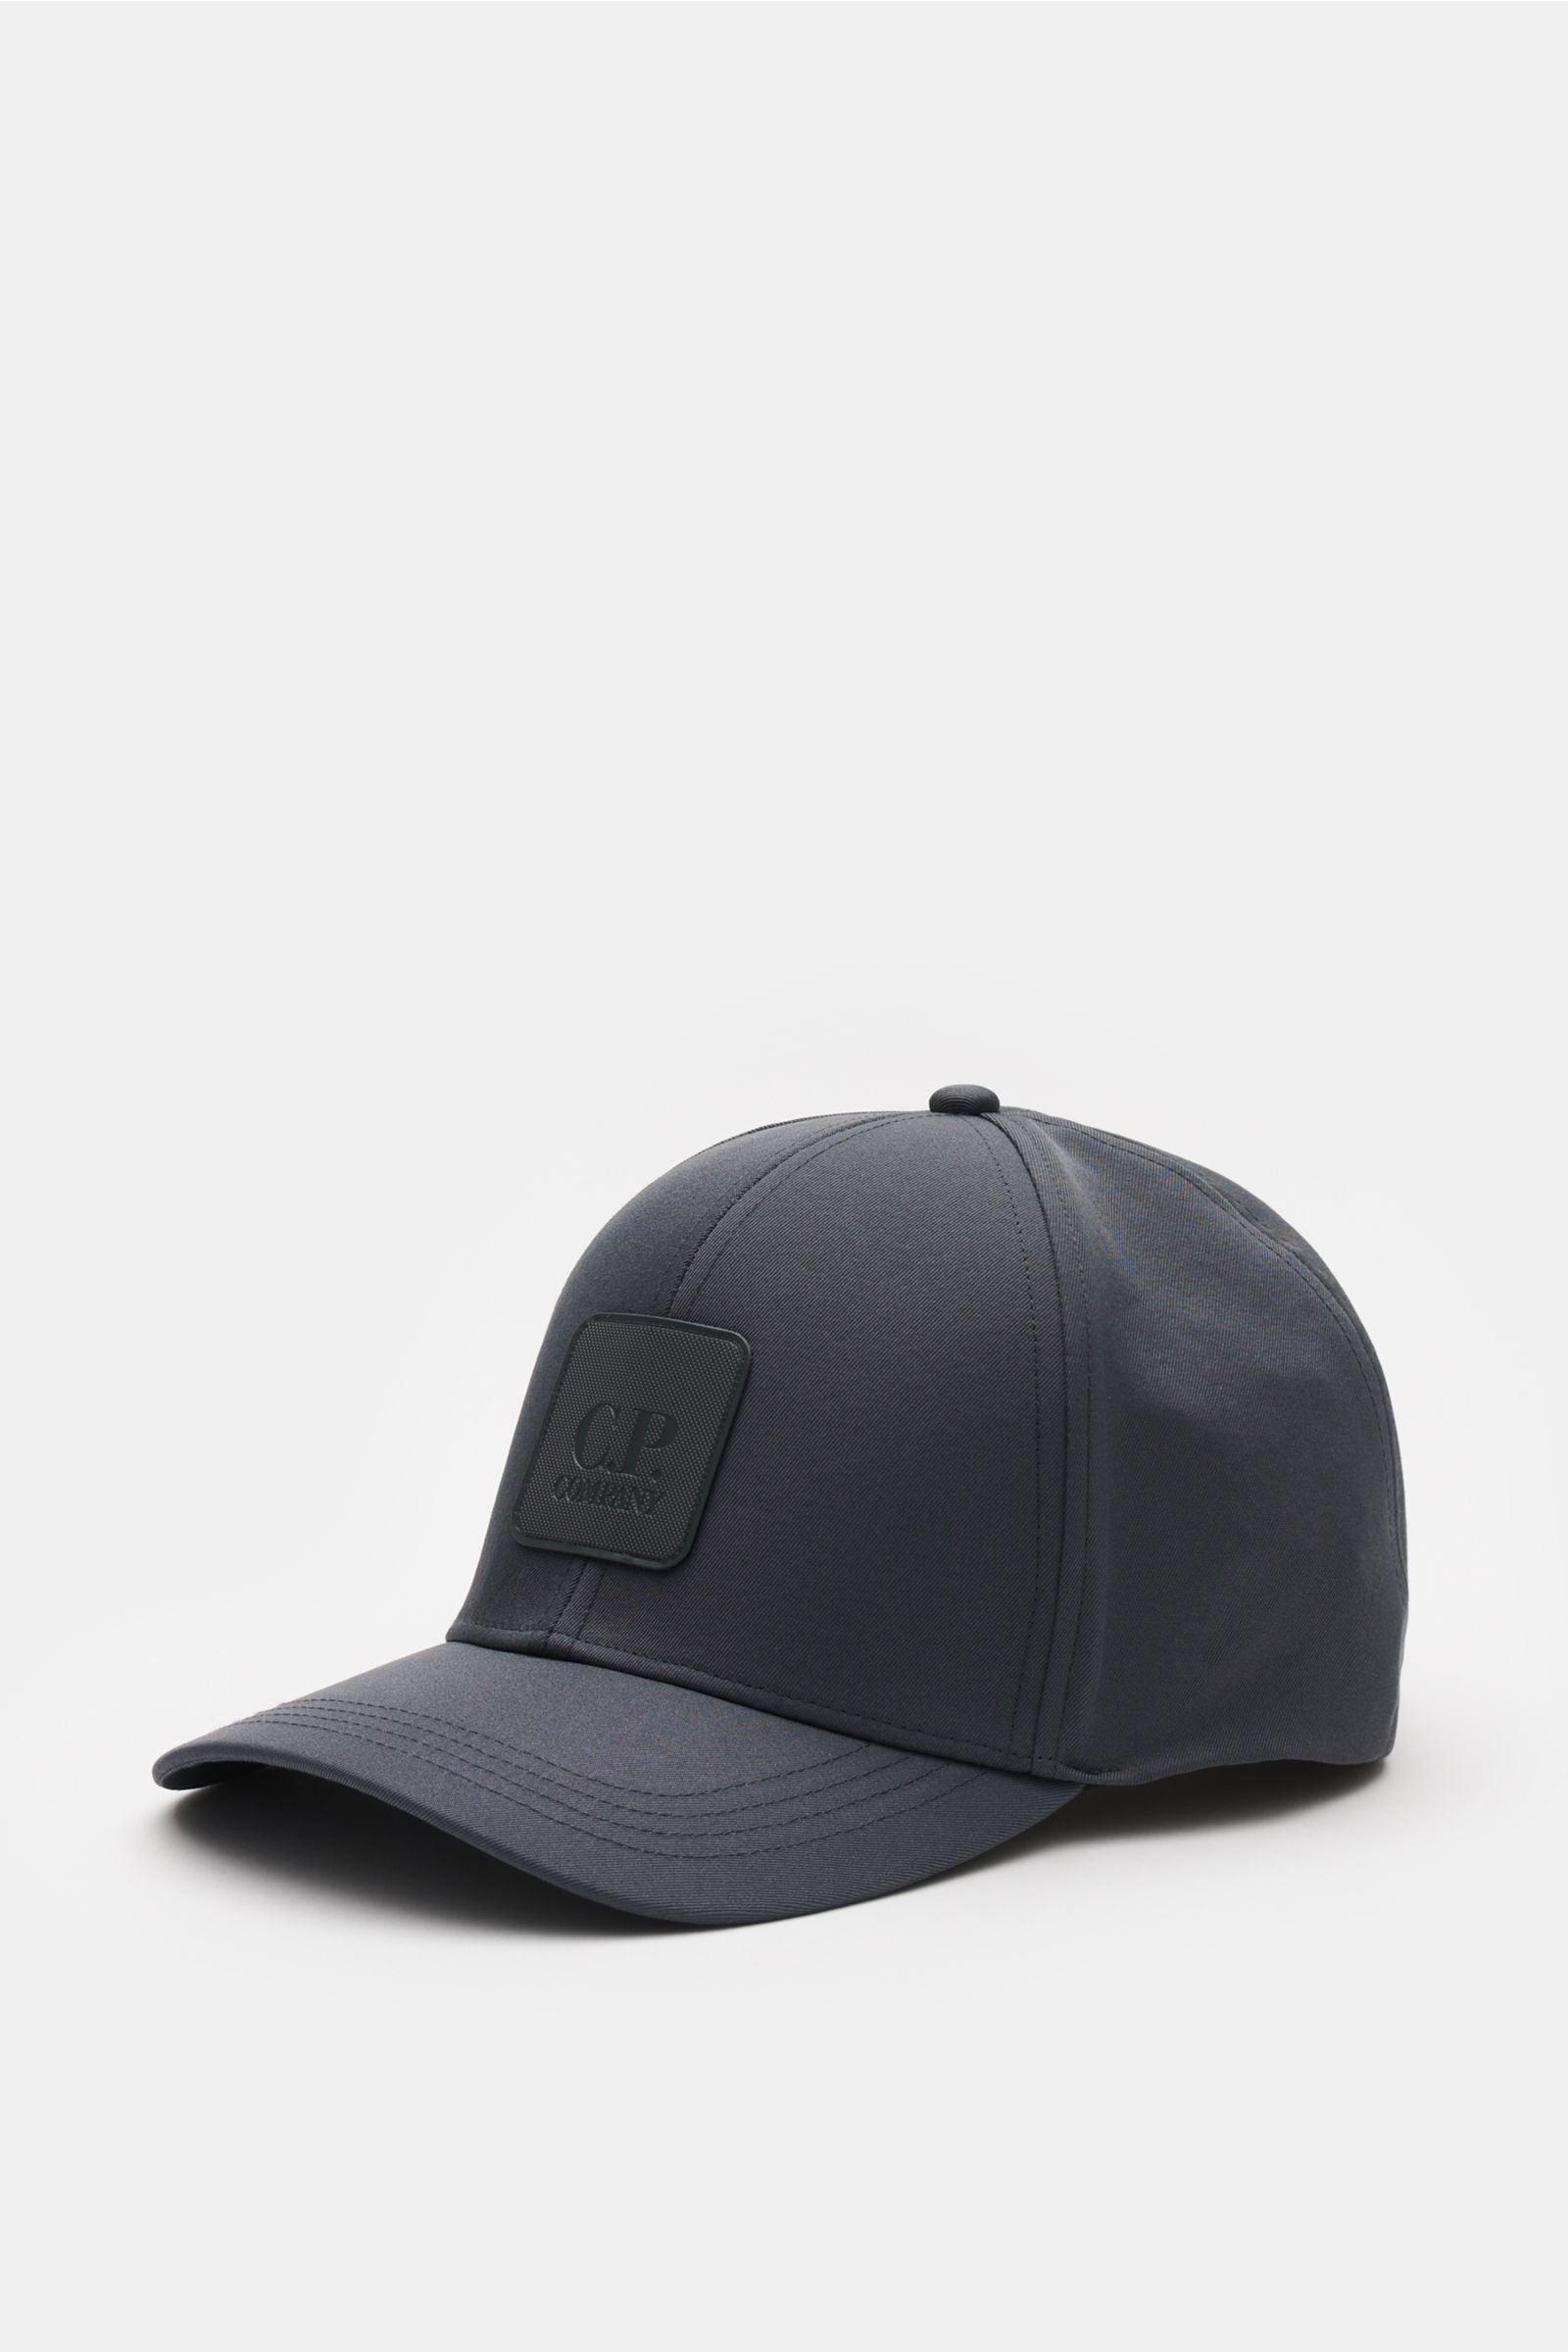 Baseball cap dark grey